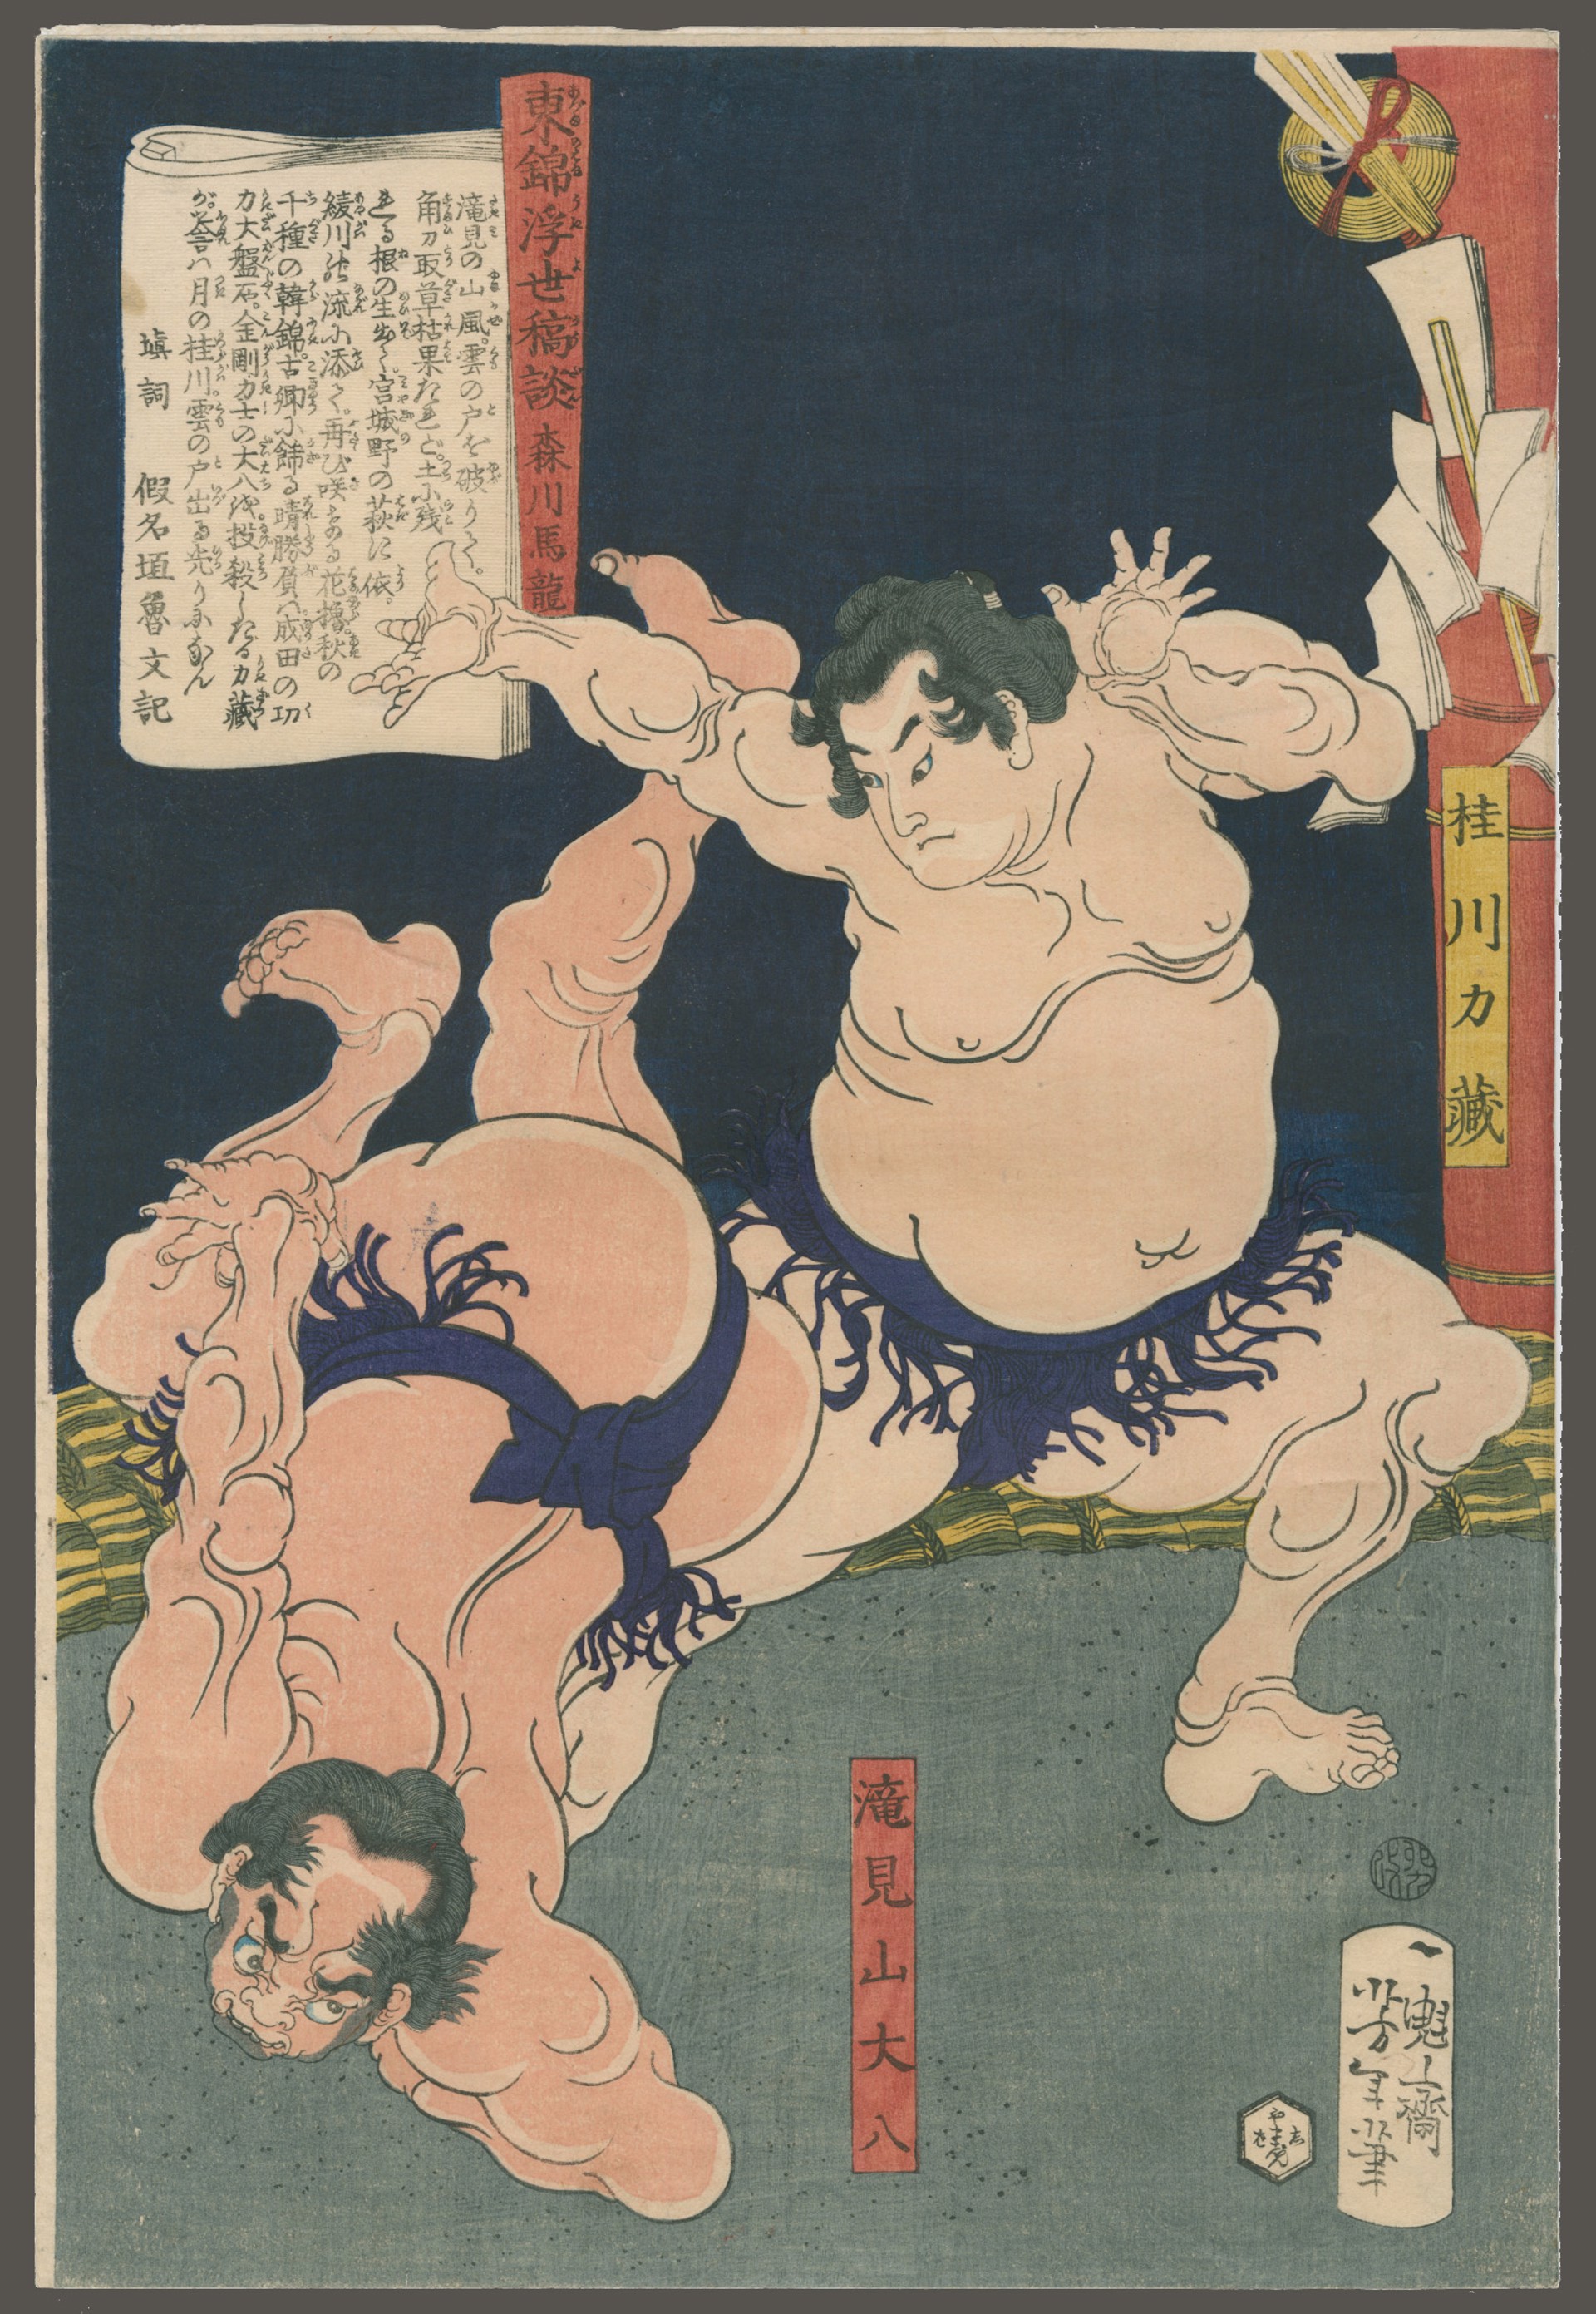 Wrestlers Takayama Daihachi and Katsuragawa Rikizo Tales of the Floating World on Eastern Brocade by Yoshitoshi